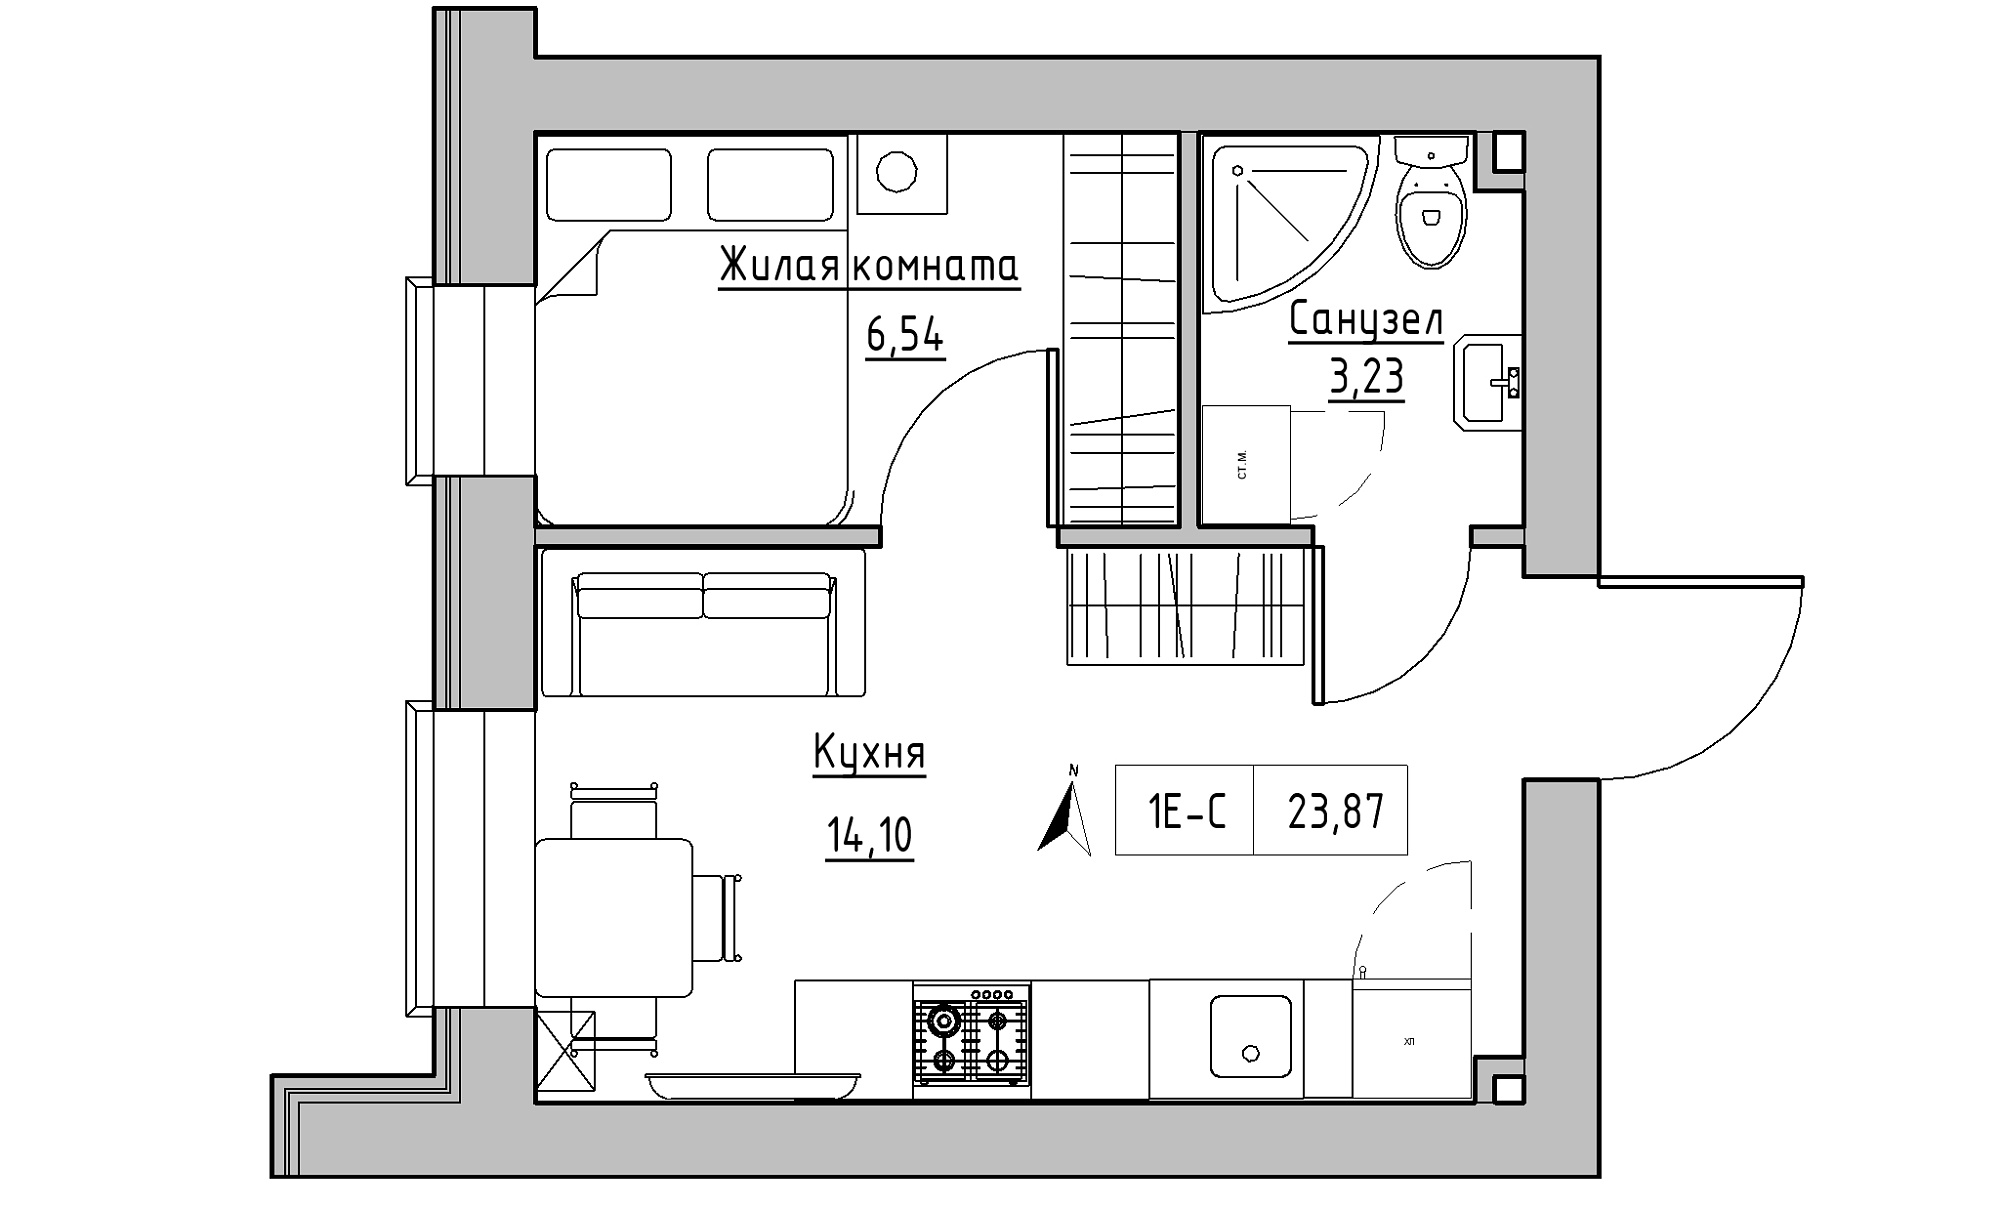 Планировка 1-к квартира площей 23.87м2, KS-016-03/0012.